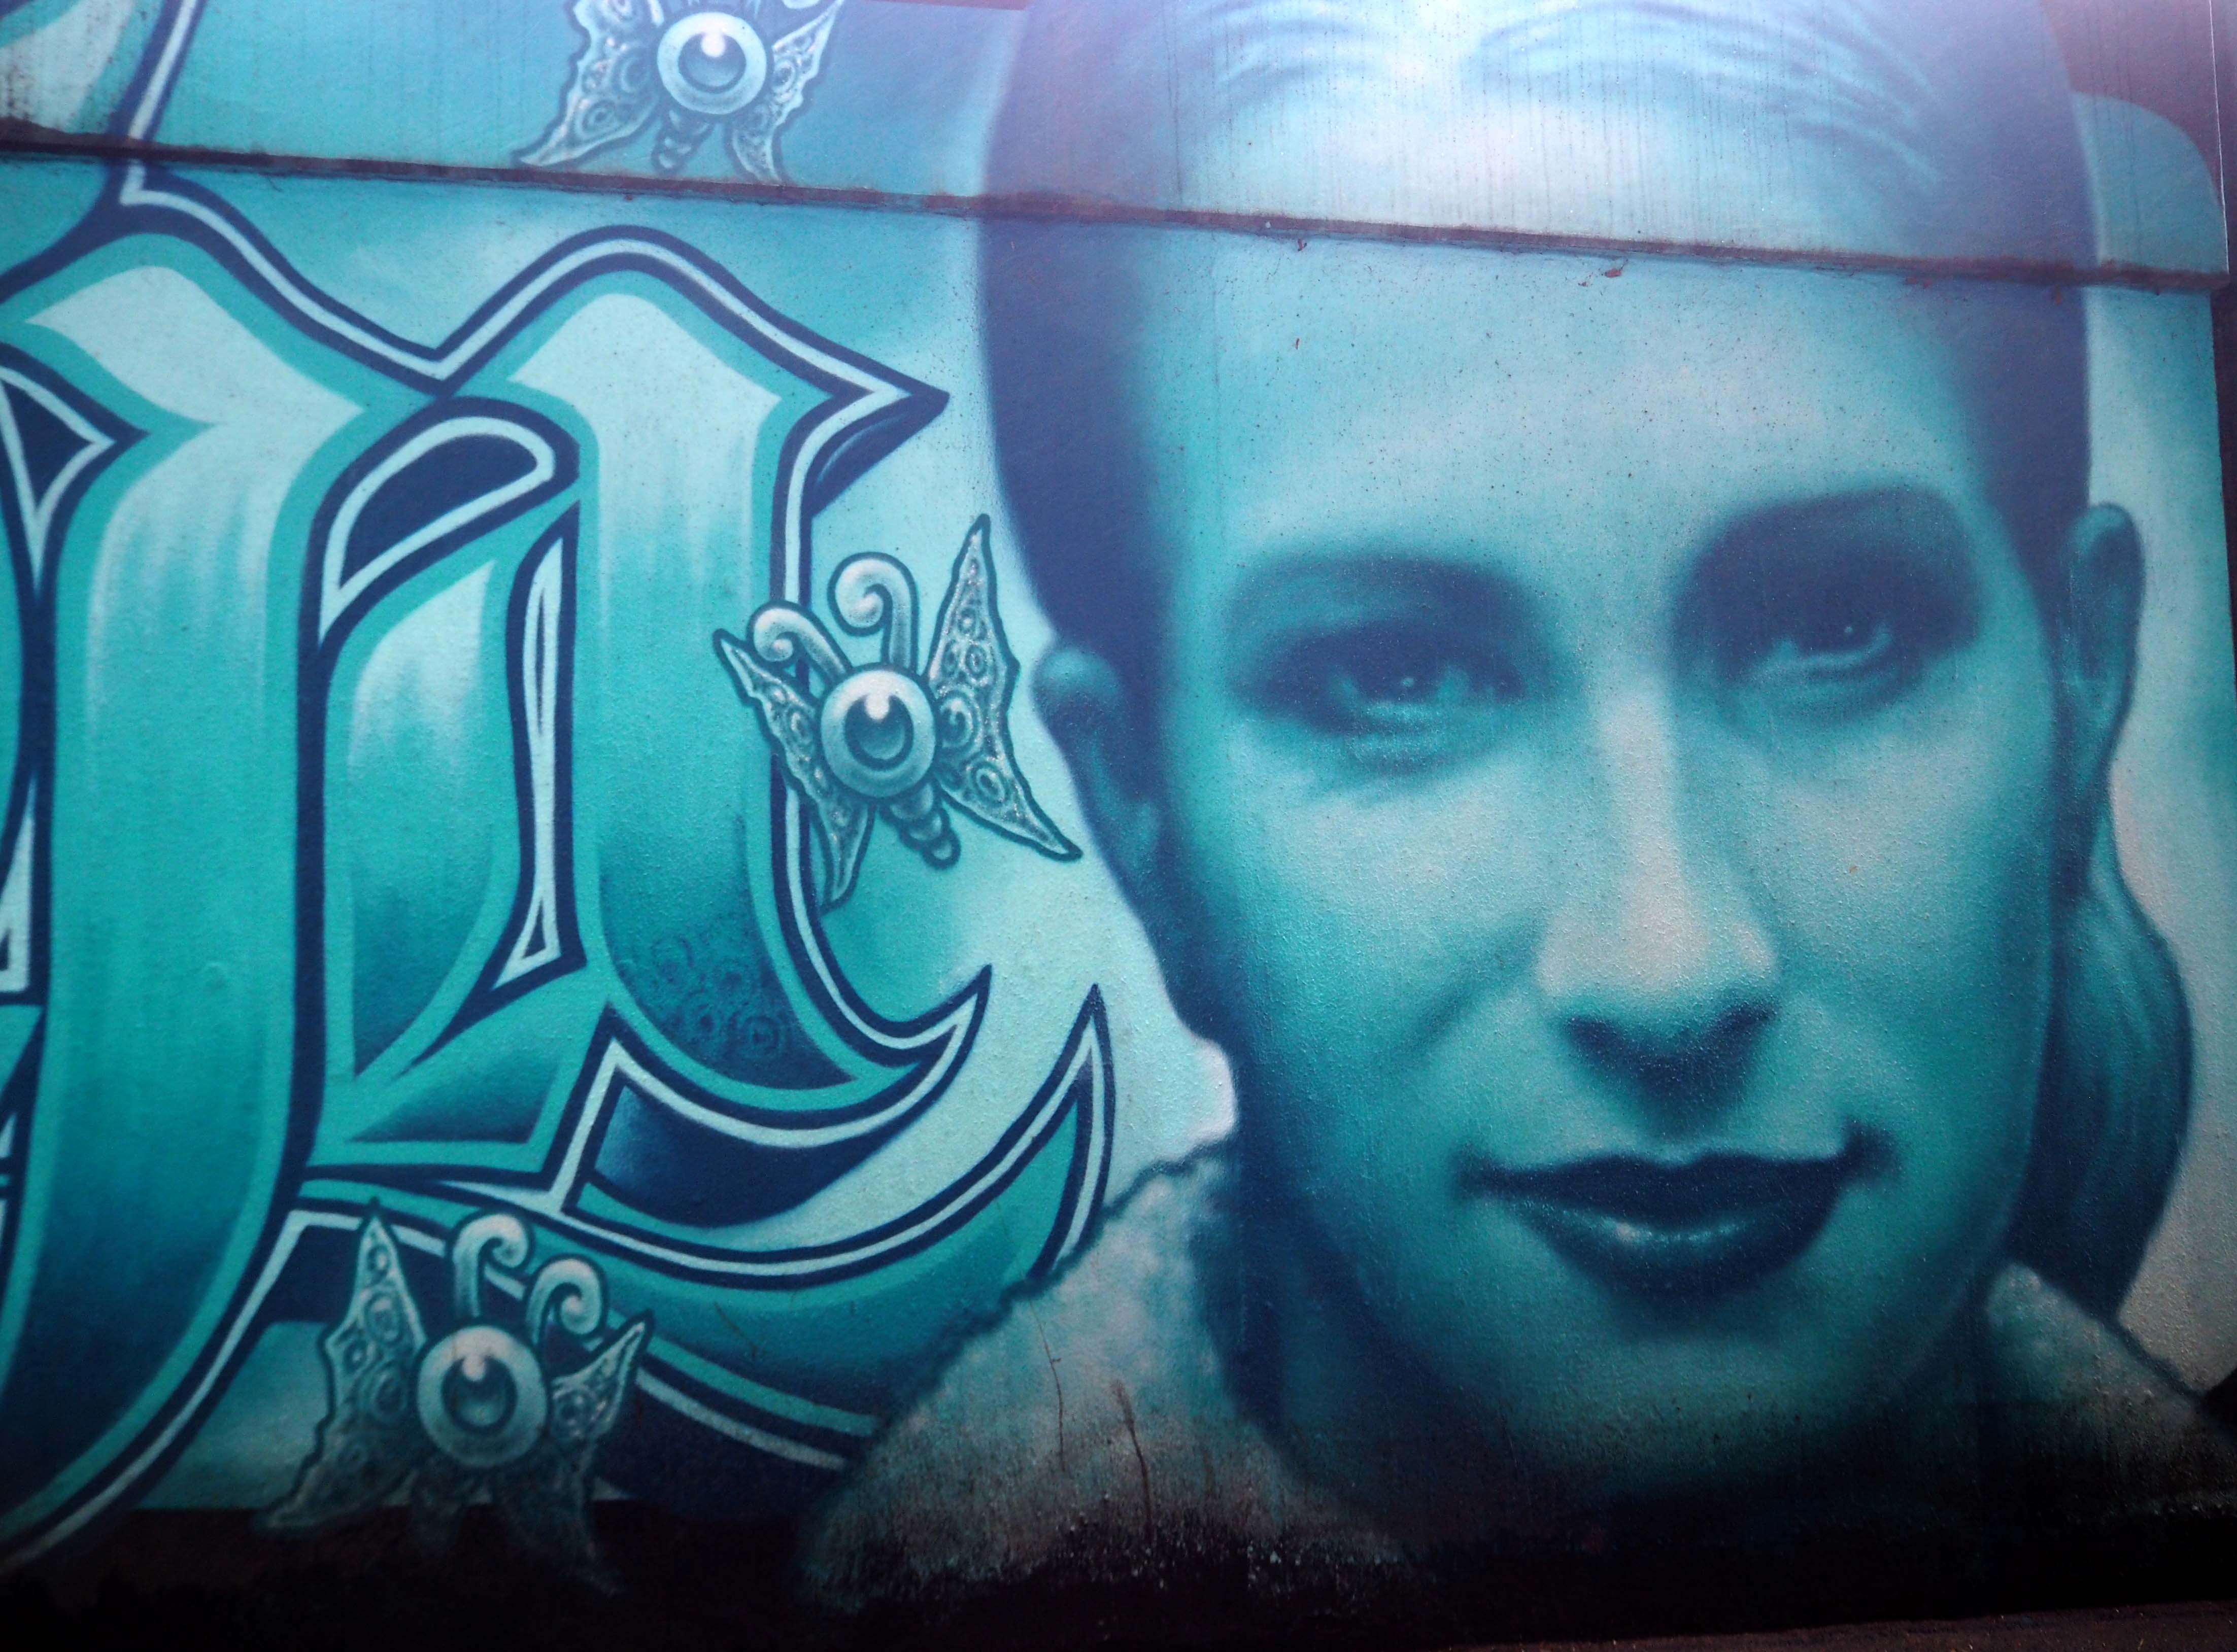 "Rest in Peace Tanja Mai" heißt das Mural in türkisblau das ein Portrait von Tanja zeig